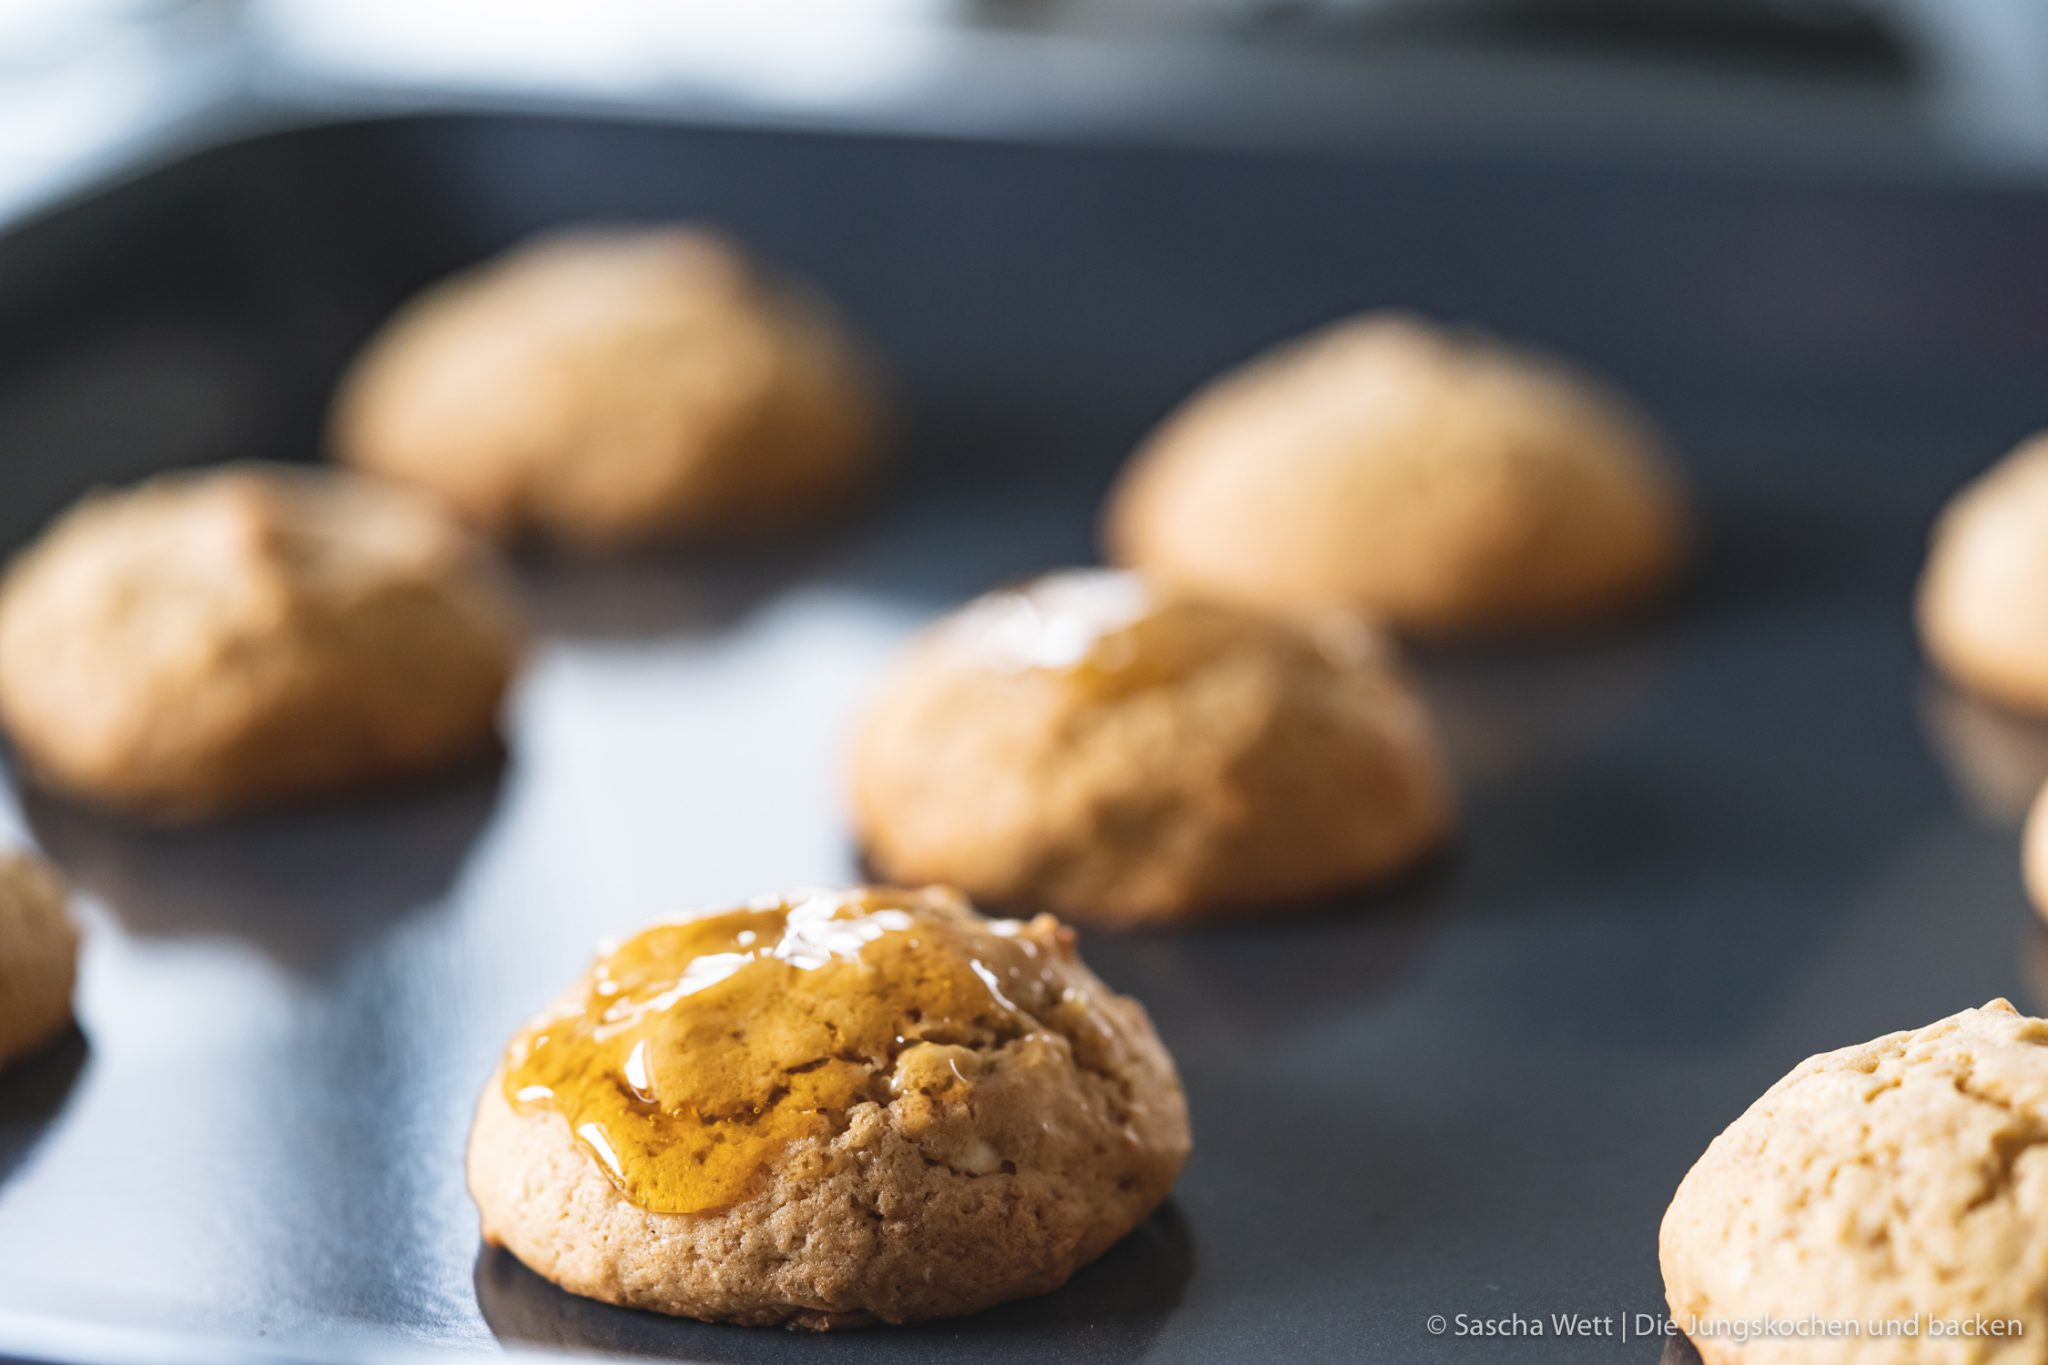 Honig Cashew Cookies kenwood kflex 13 | So schnell verfliegt eine Woche! Wir haben mit unseren Bloggerfreunden unseren Bloggeburtstag ordentlich gefeiert. Wir haben das Fest mit einer Pasta Party eröffnet und nun beenden wir es mit einer unserer liebsten Süßigkeiten. COOKIES - die gehen nämlich einfach immer und man kann so unglaublich kreativ dabei sein. Dieses mal sind es Honig-Cookies mit Cashewkernen geworden und der Honig macht die kleinen Kekse so soft und saftig ... wir lieben sie genau so! Damit ihr unsere Cookies auch noch spielend leicht nach backen könnt, haben wir und Kenwood noch ein Gewinnspiel für euch im Gepäck. So eine Party muss ja auch ein rauschendes Ende finden.